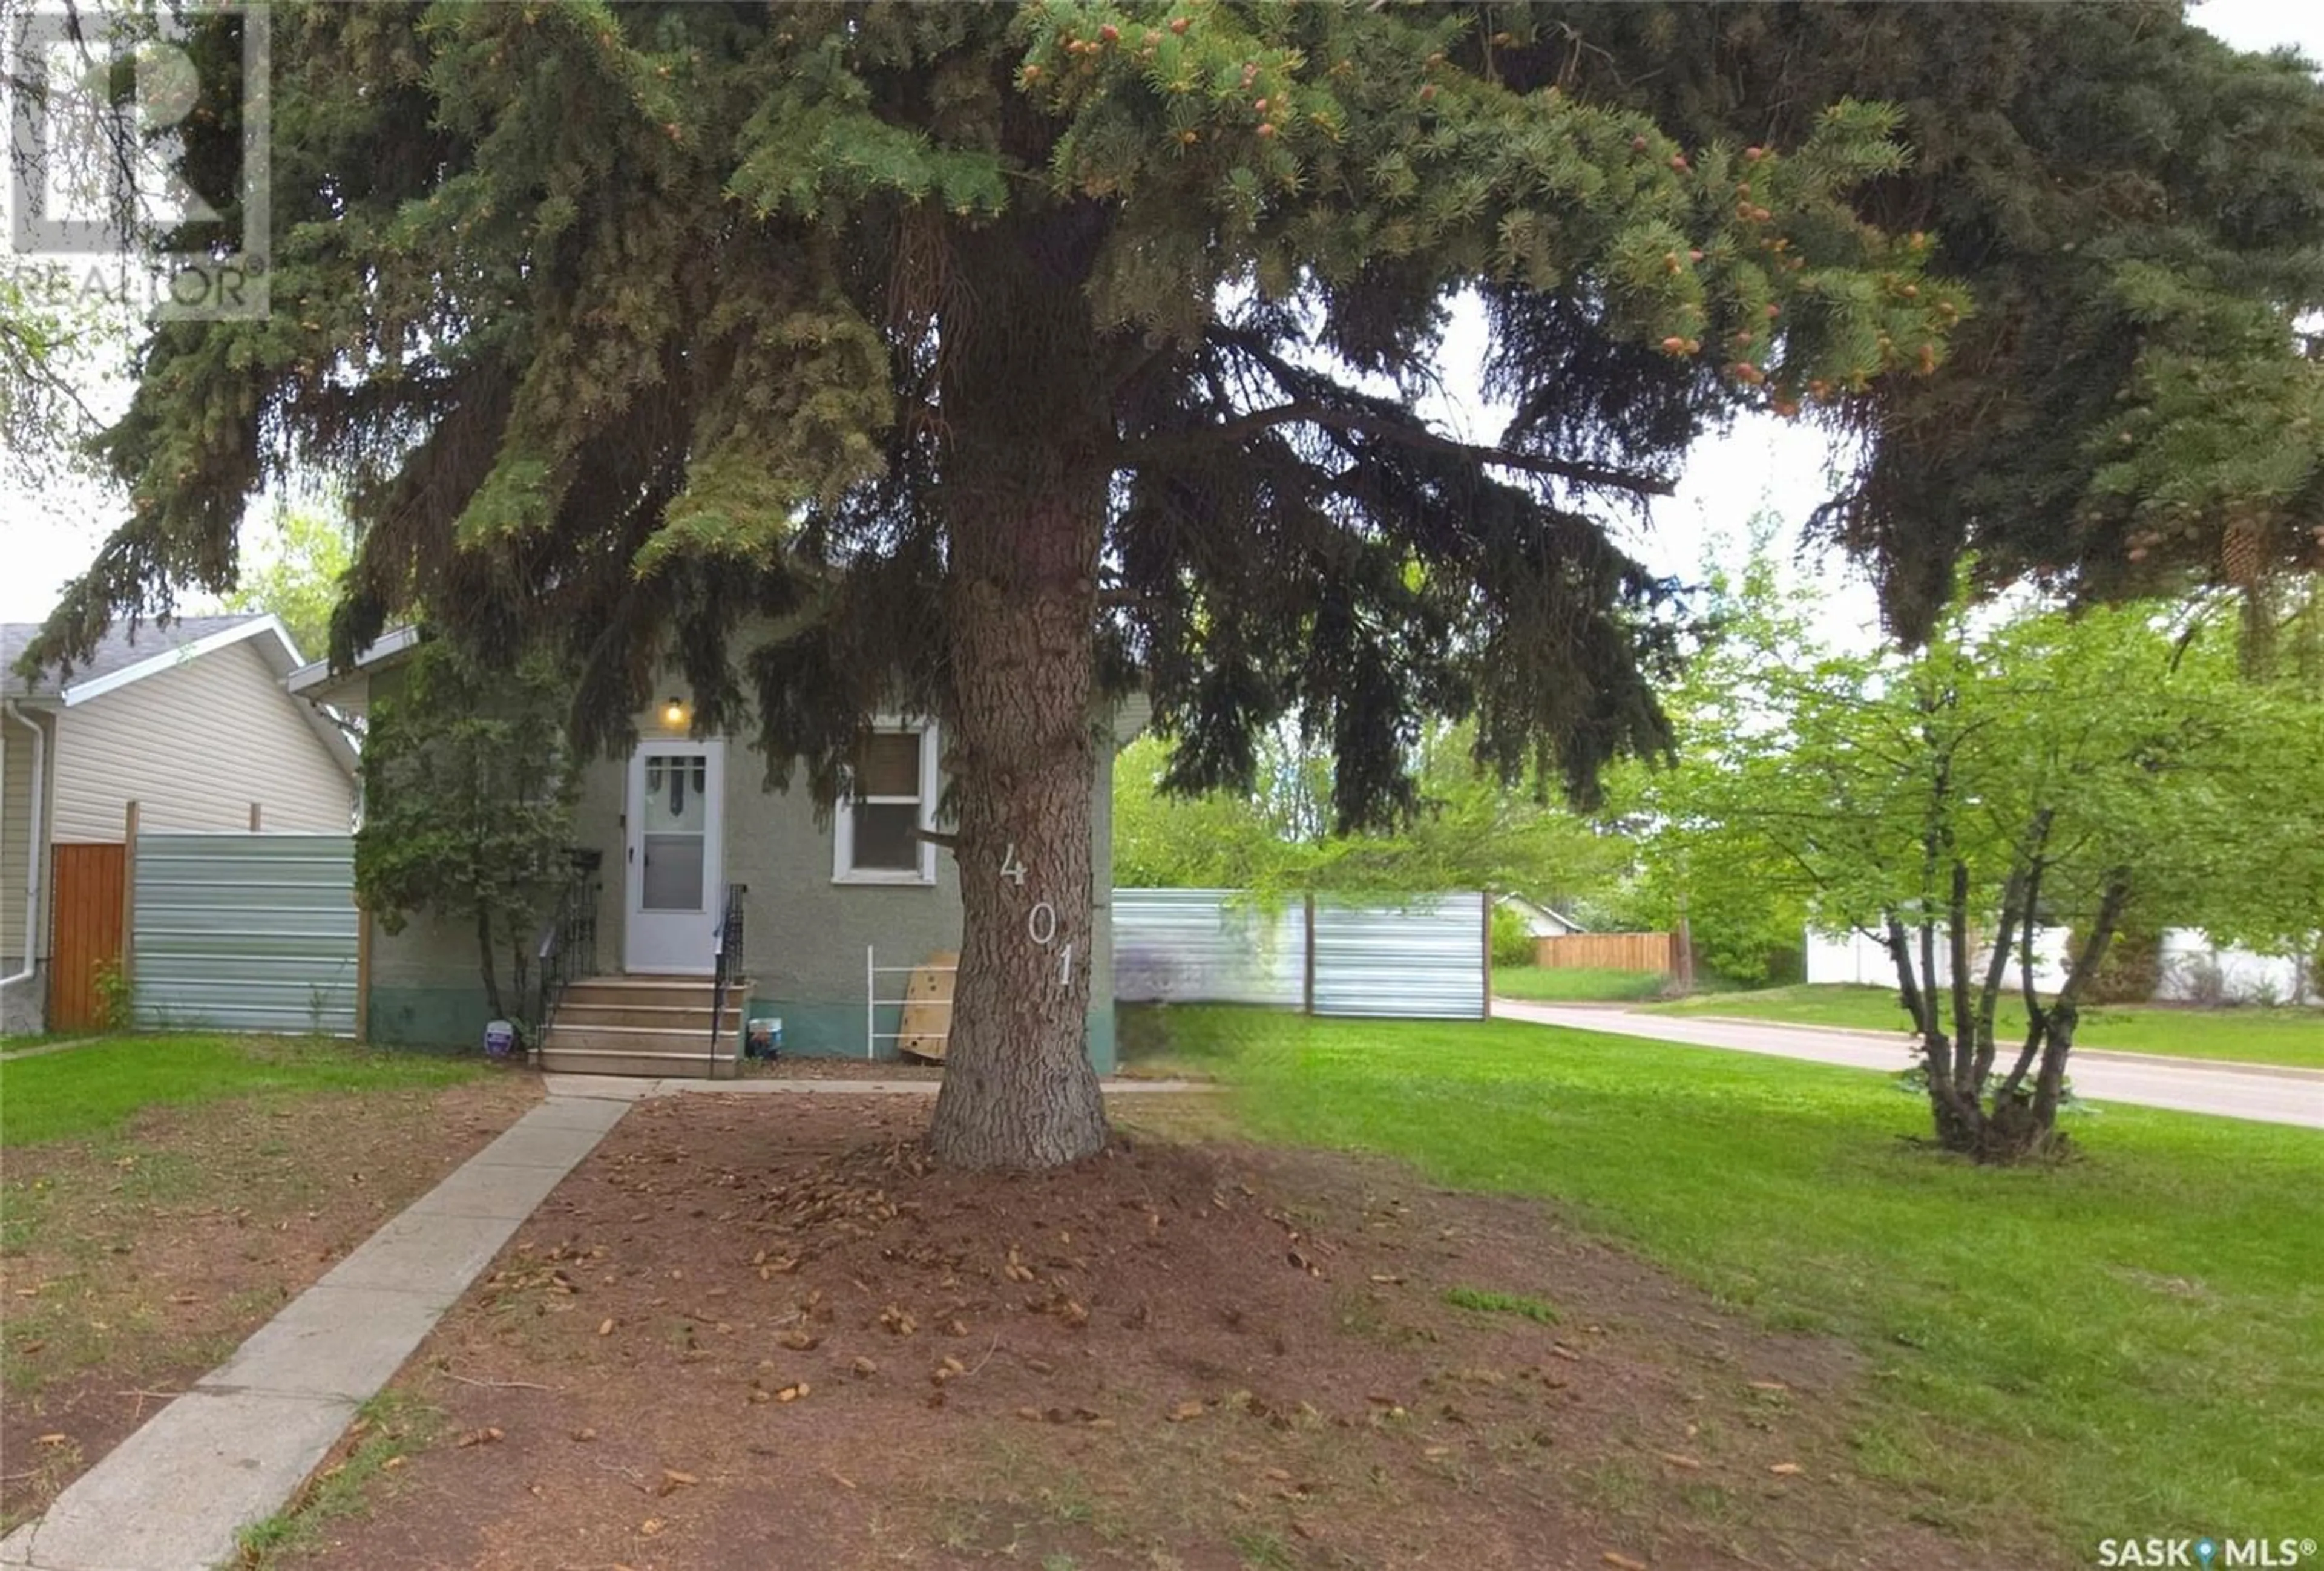 A pic from exterior of the house or condo for 401 V AVENUE S, Saskatoon Saskatchewan S7M3E6